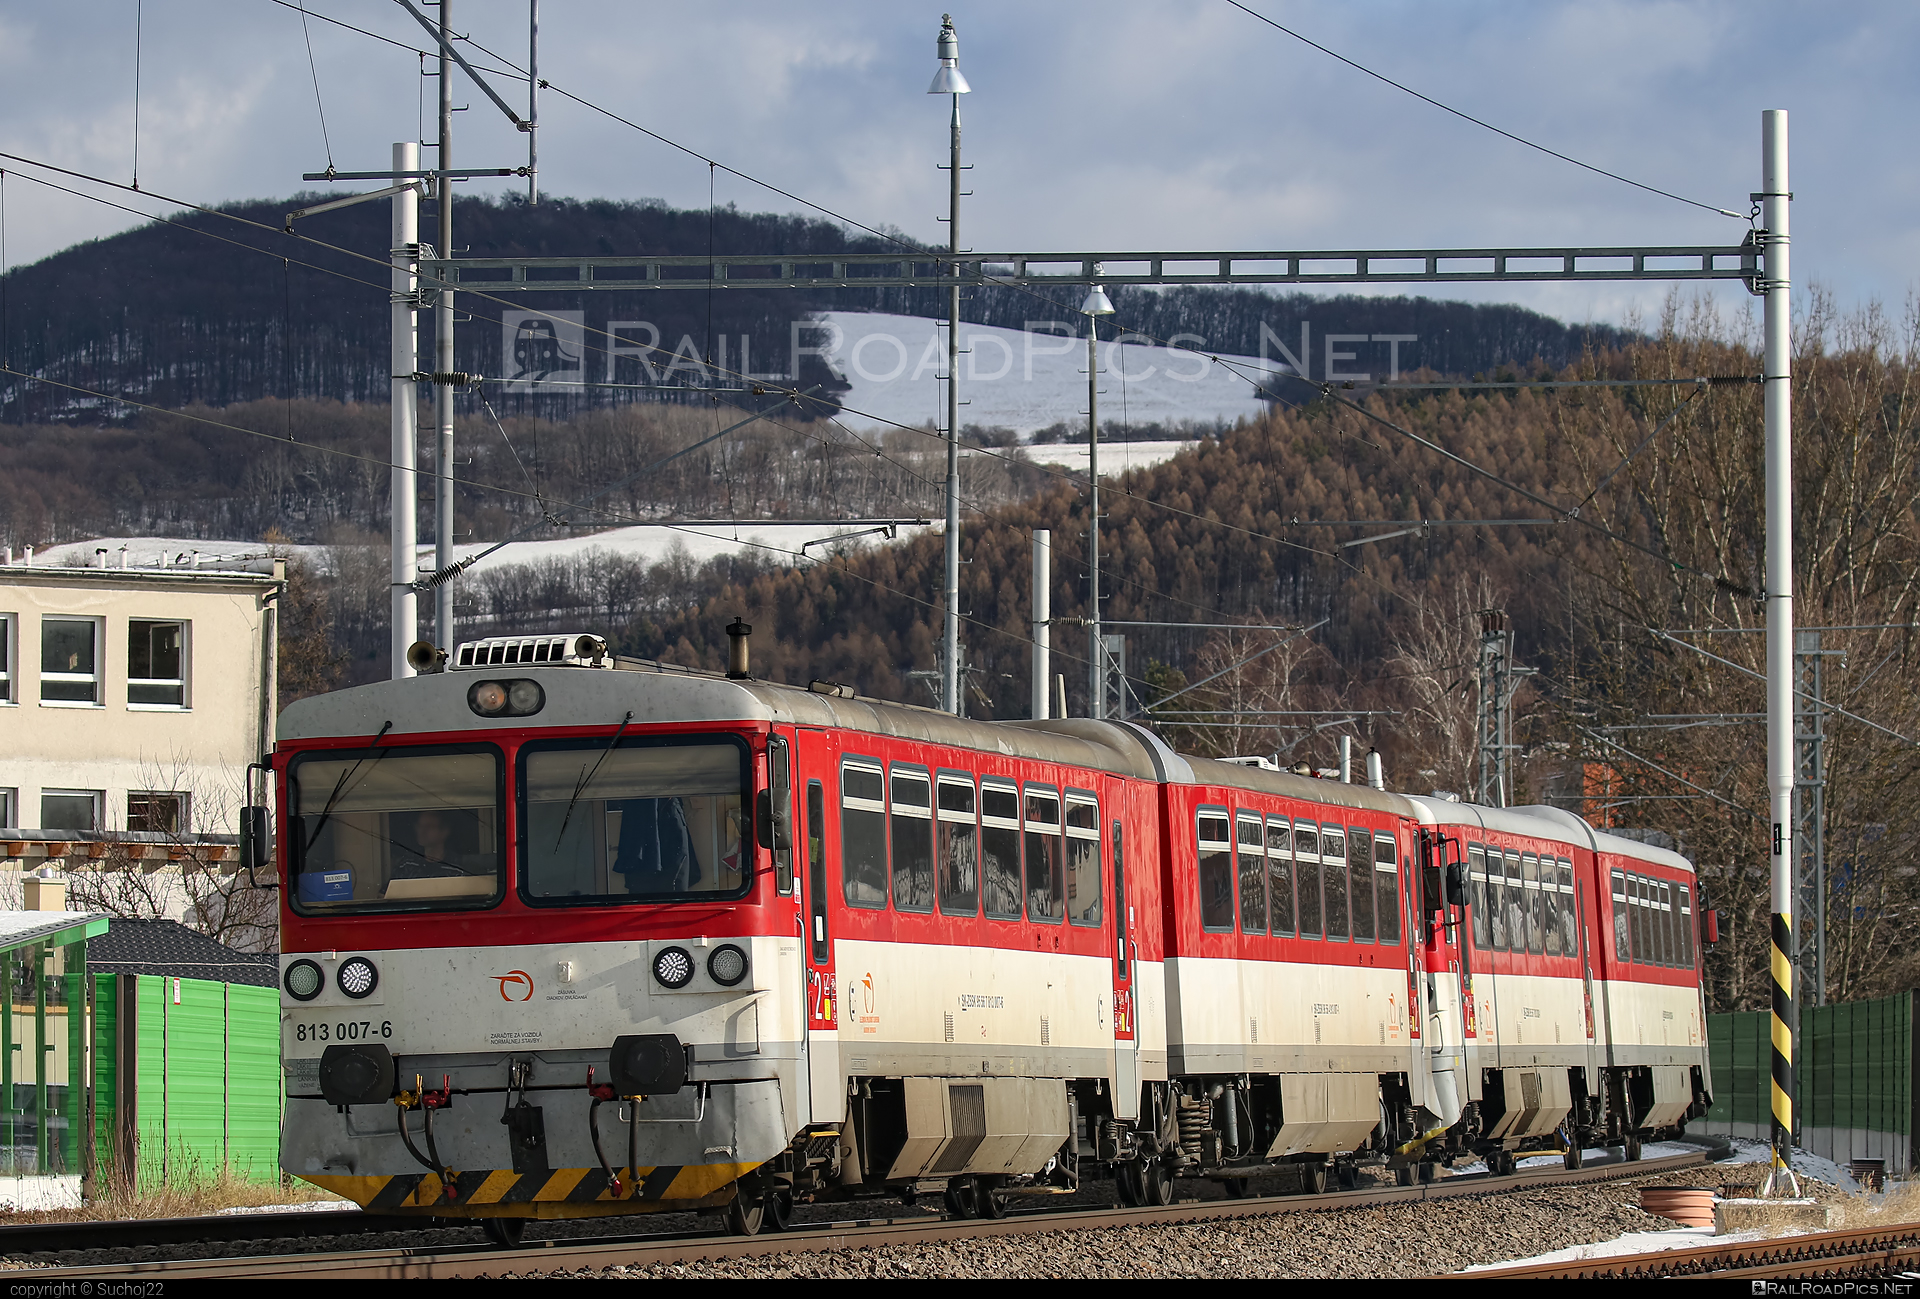 ŽOS Zvolen Class 813.0/913.0 - 813 007-6 operated by Železničná Spoločnost' Slovensko, a.s. #ZeleznicnaSpolocnostSlovensko #bageta #zoszvolen #zoszvolen8130 #zoszvolen9130 #zssk